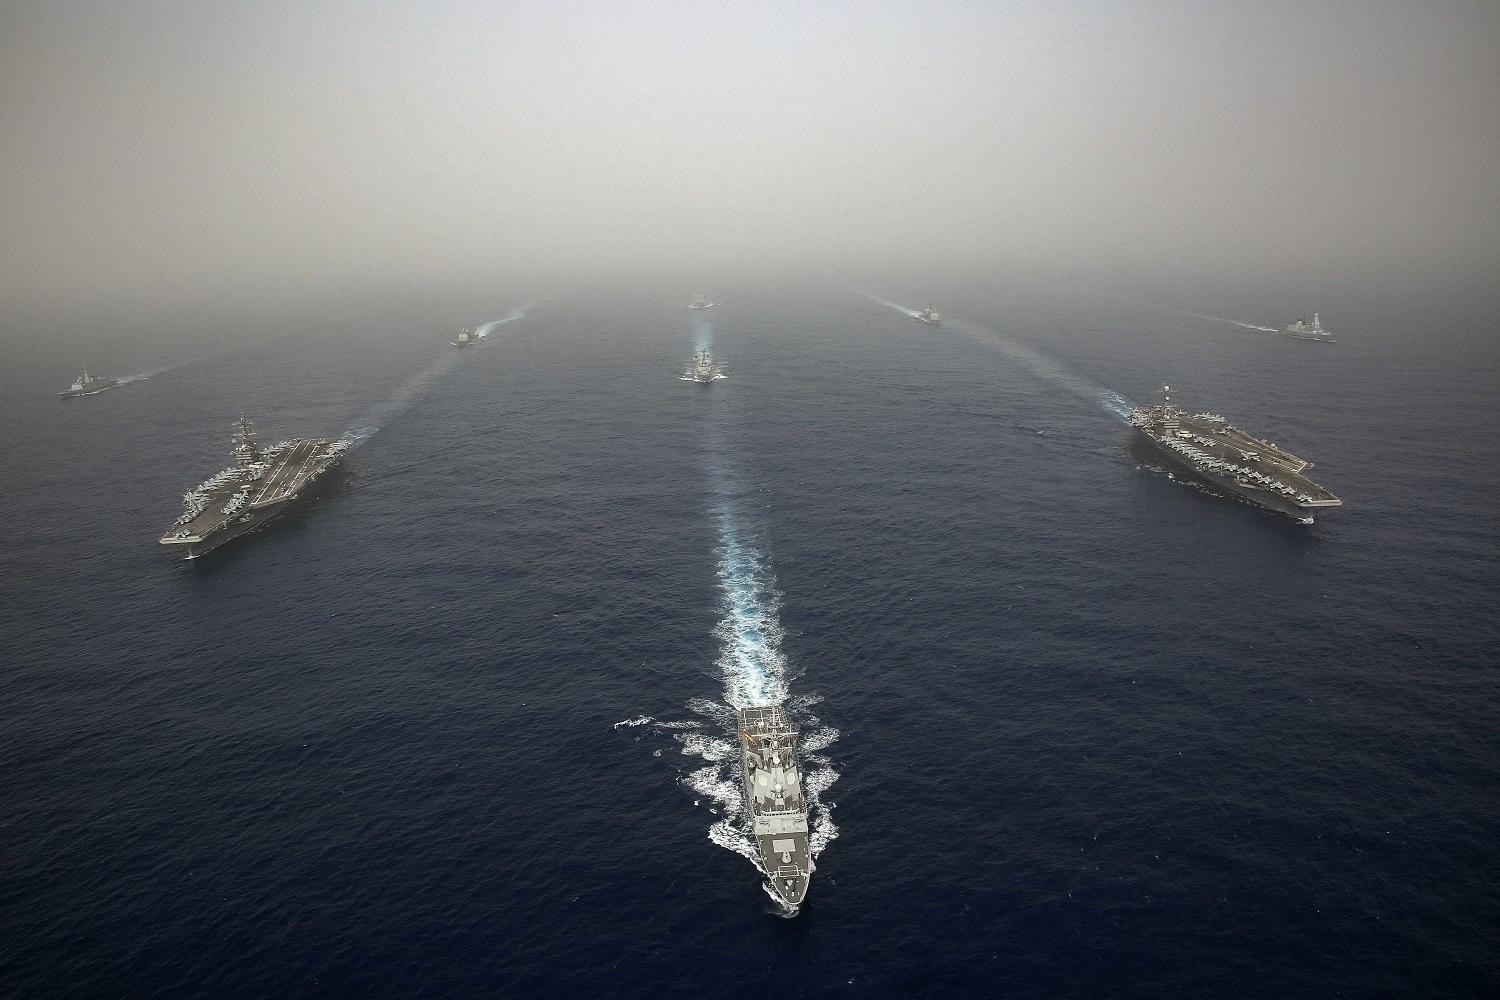 سفن أميركية وأوروبية تمركزت في منطقة الخليج للرد على أي تهديدات إيرانية محتملة. البحرية الأميركية/ أ ف ب 